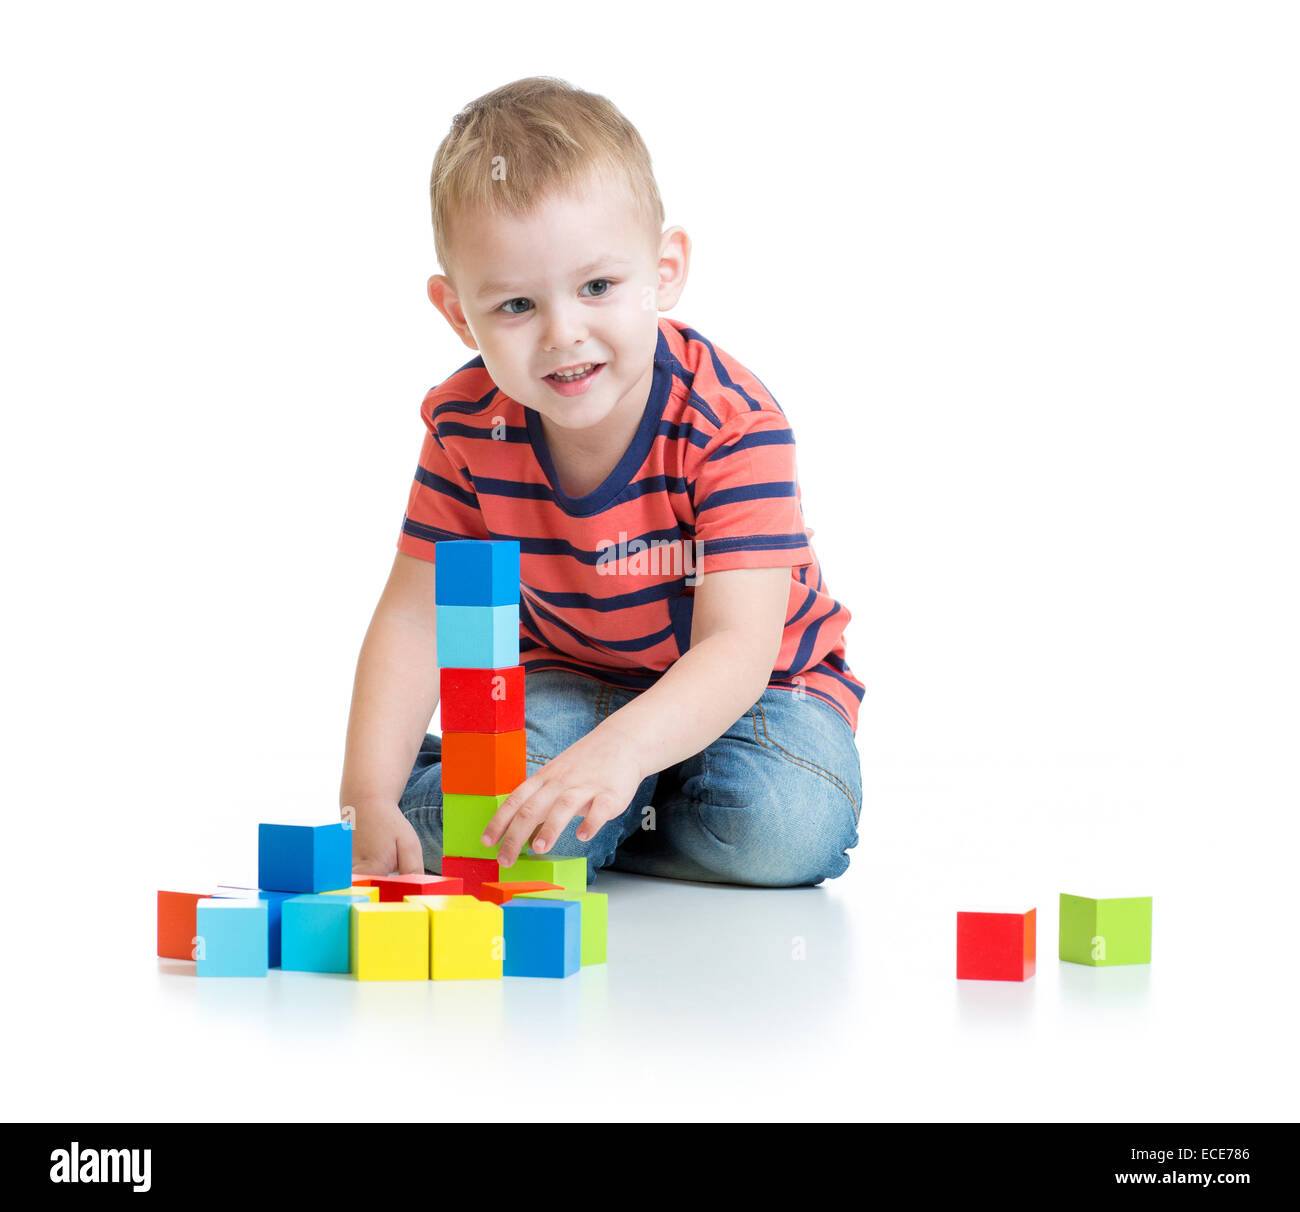 Kid spielen und Turm mit bunten Blöcken zu bauen Stockfoto